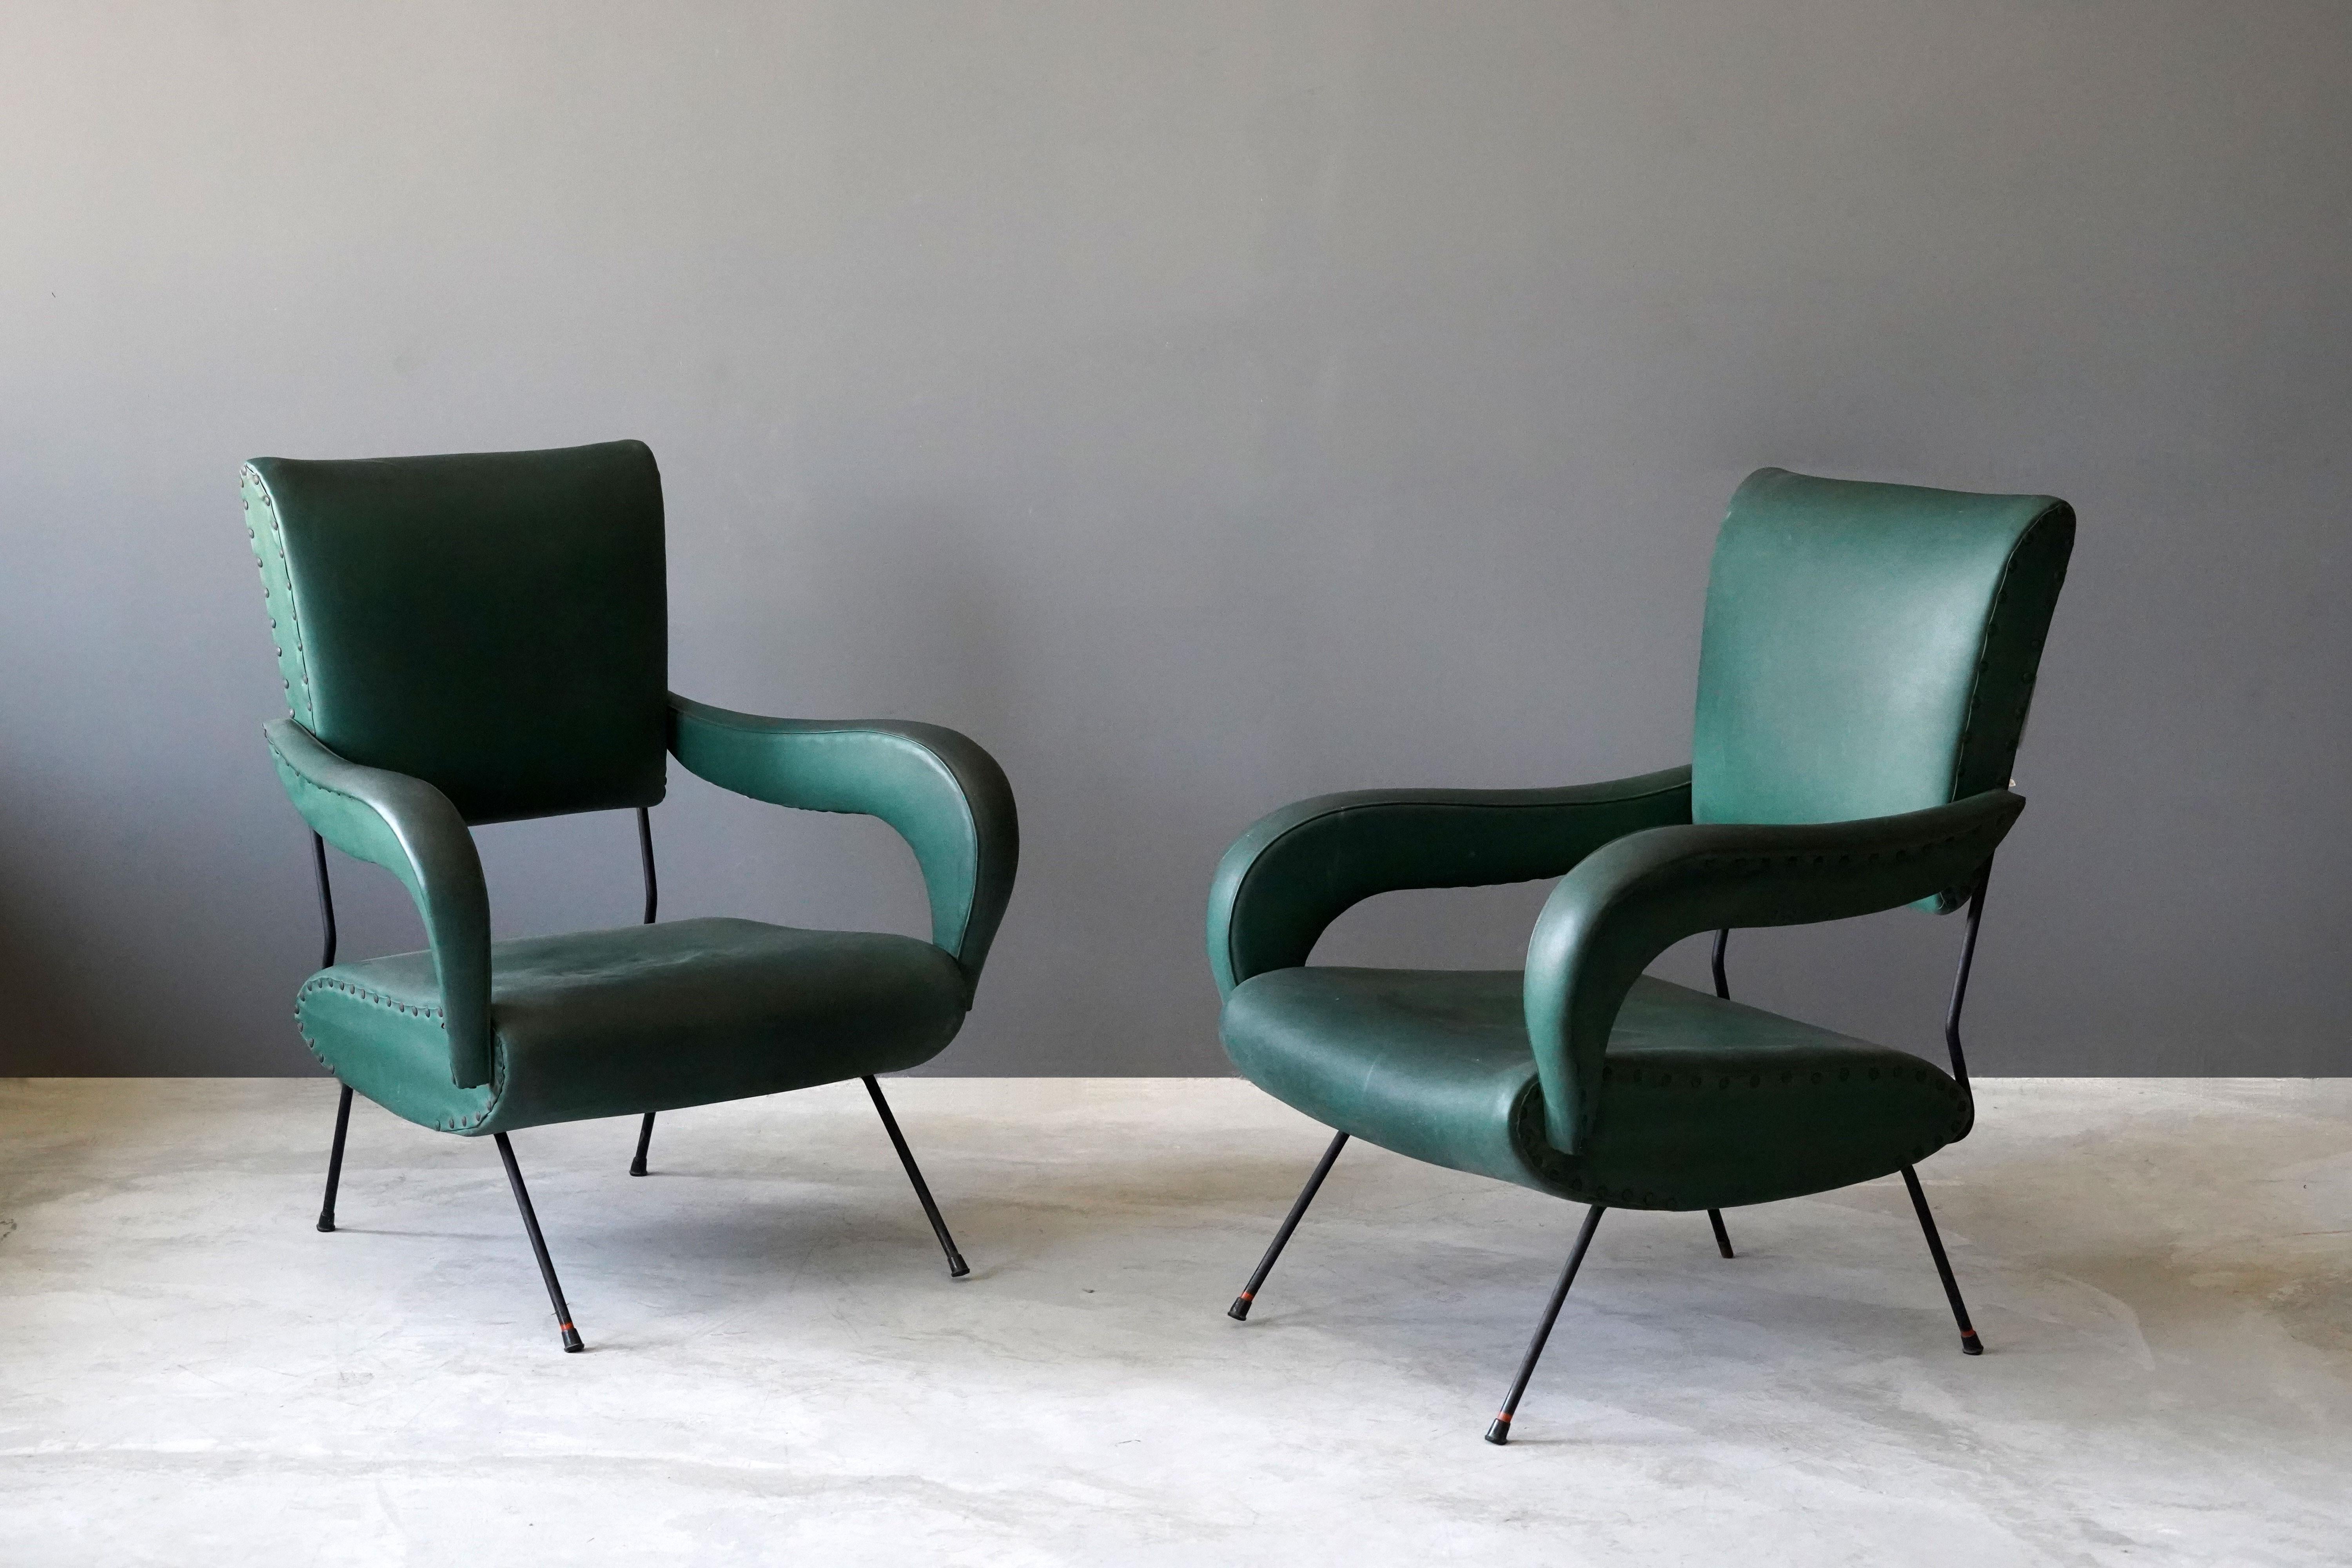 Ein Paar Bio-Lounge-Stühle / Sessel. Entworfen und hergestellt in Italien, 1950er Jahre. 

Weitere Designer dieser Zeit sind Carlo Mollino, Augusto Bozzi, Isamu Noguchi, Vladimir Kagan und Gastone Rinaldi.